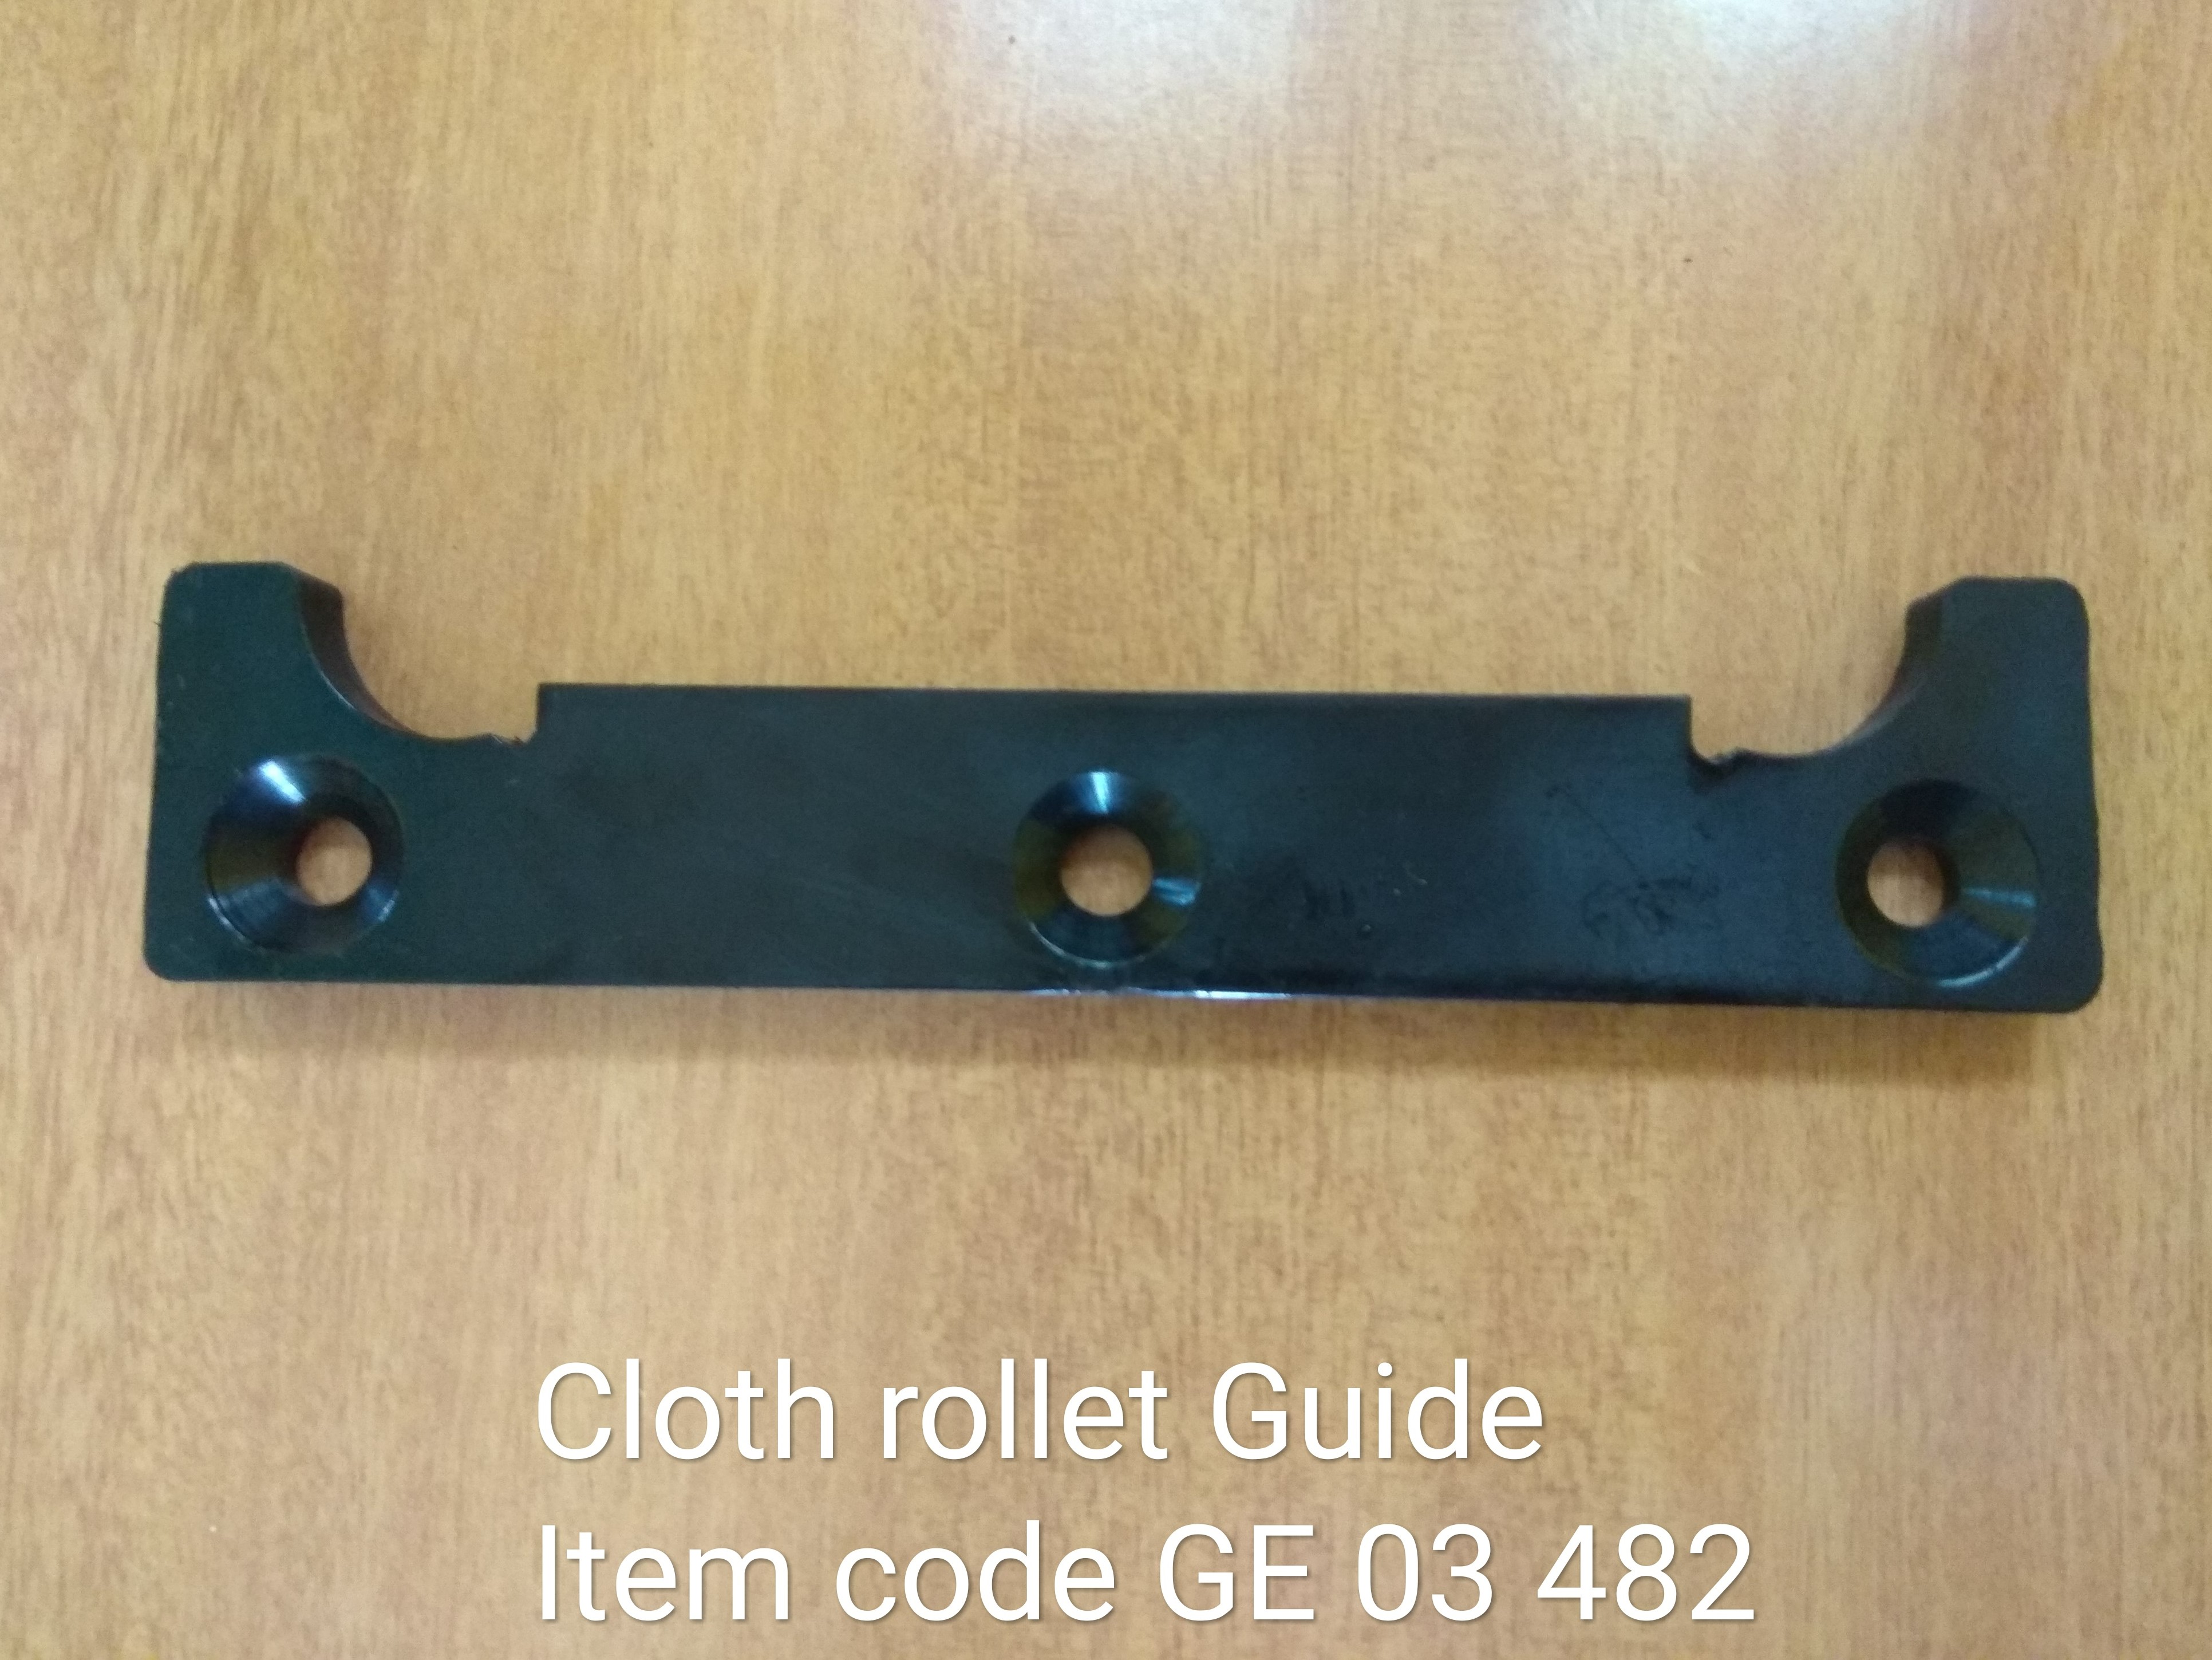 GE_03_482_Cloth_Rollet_Guide_54_12.jpg